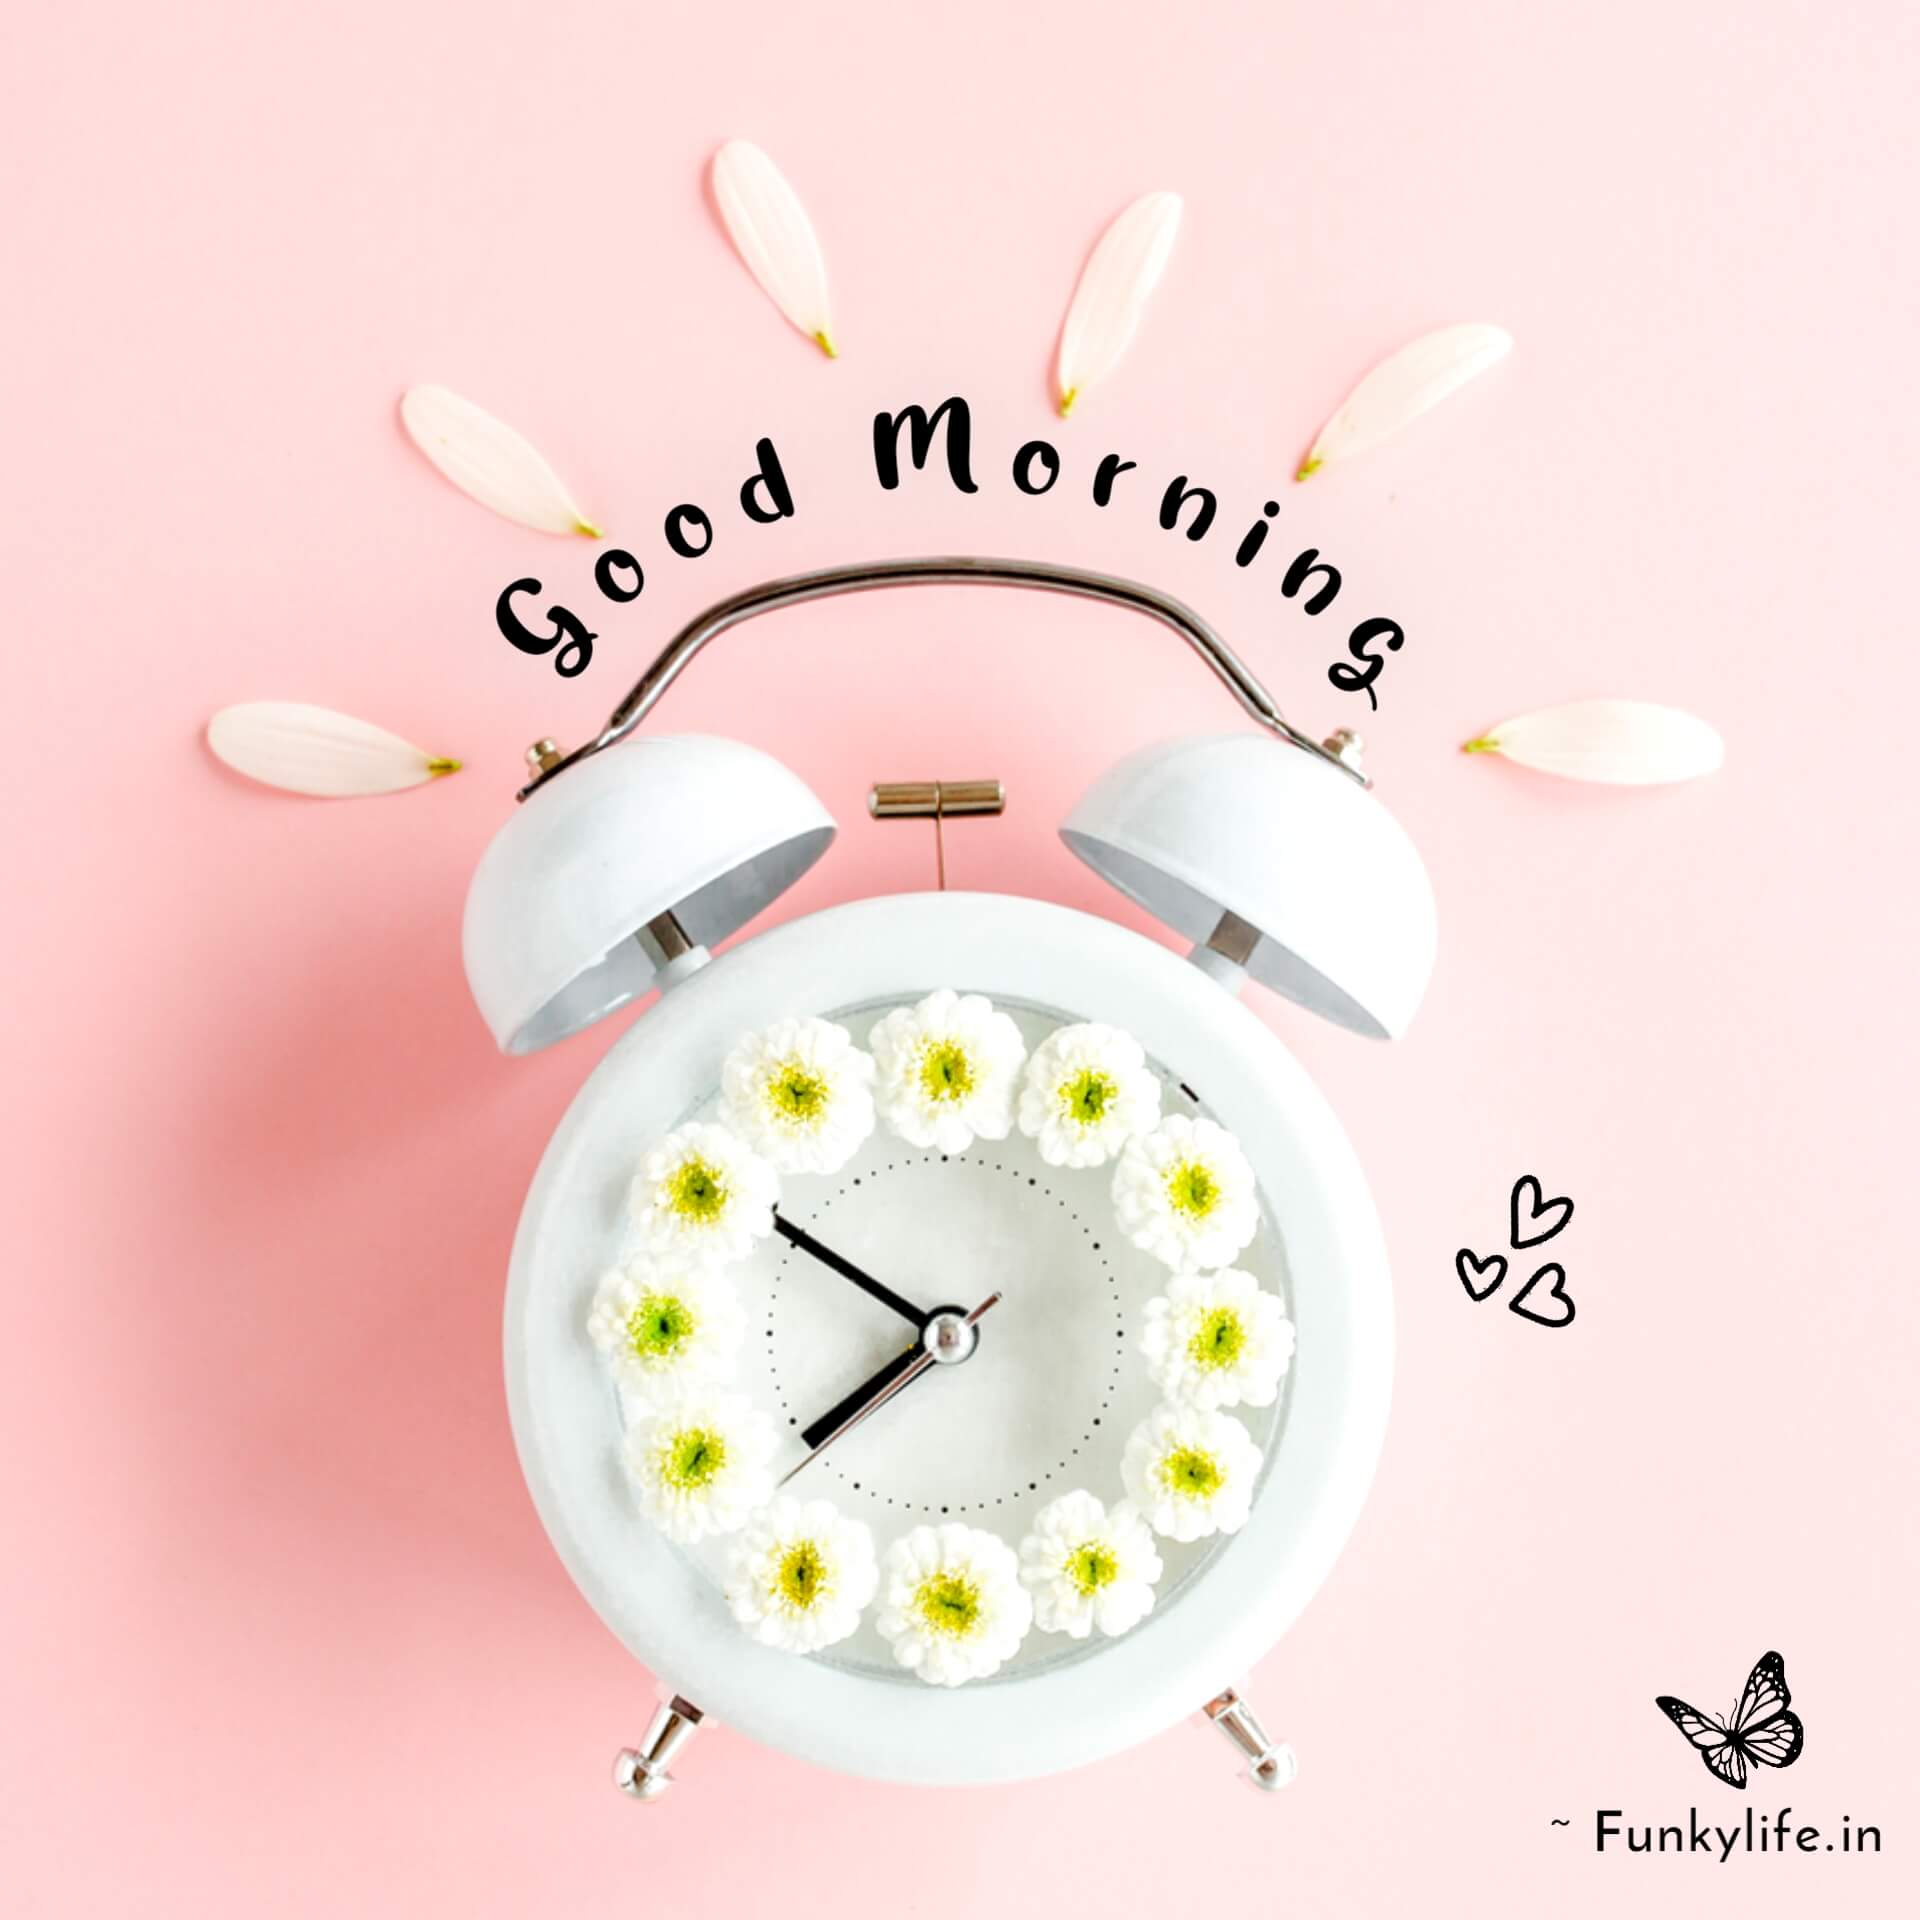 Good morning alarm clock Image